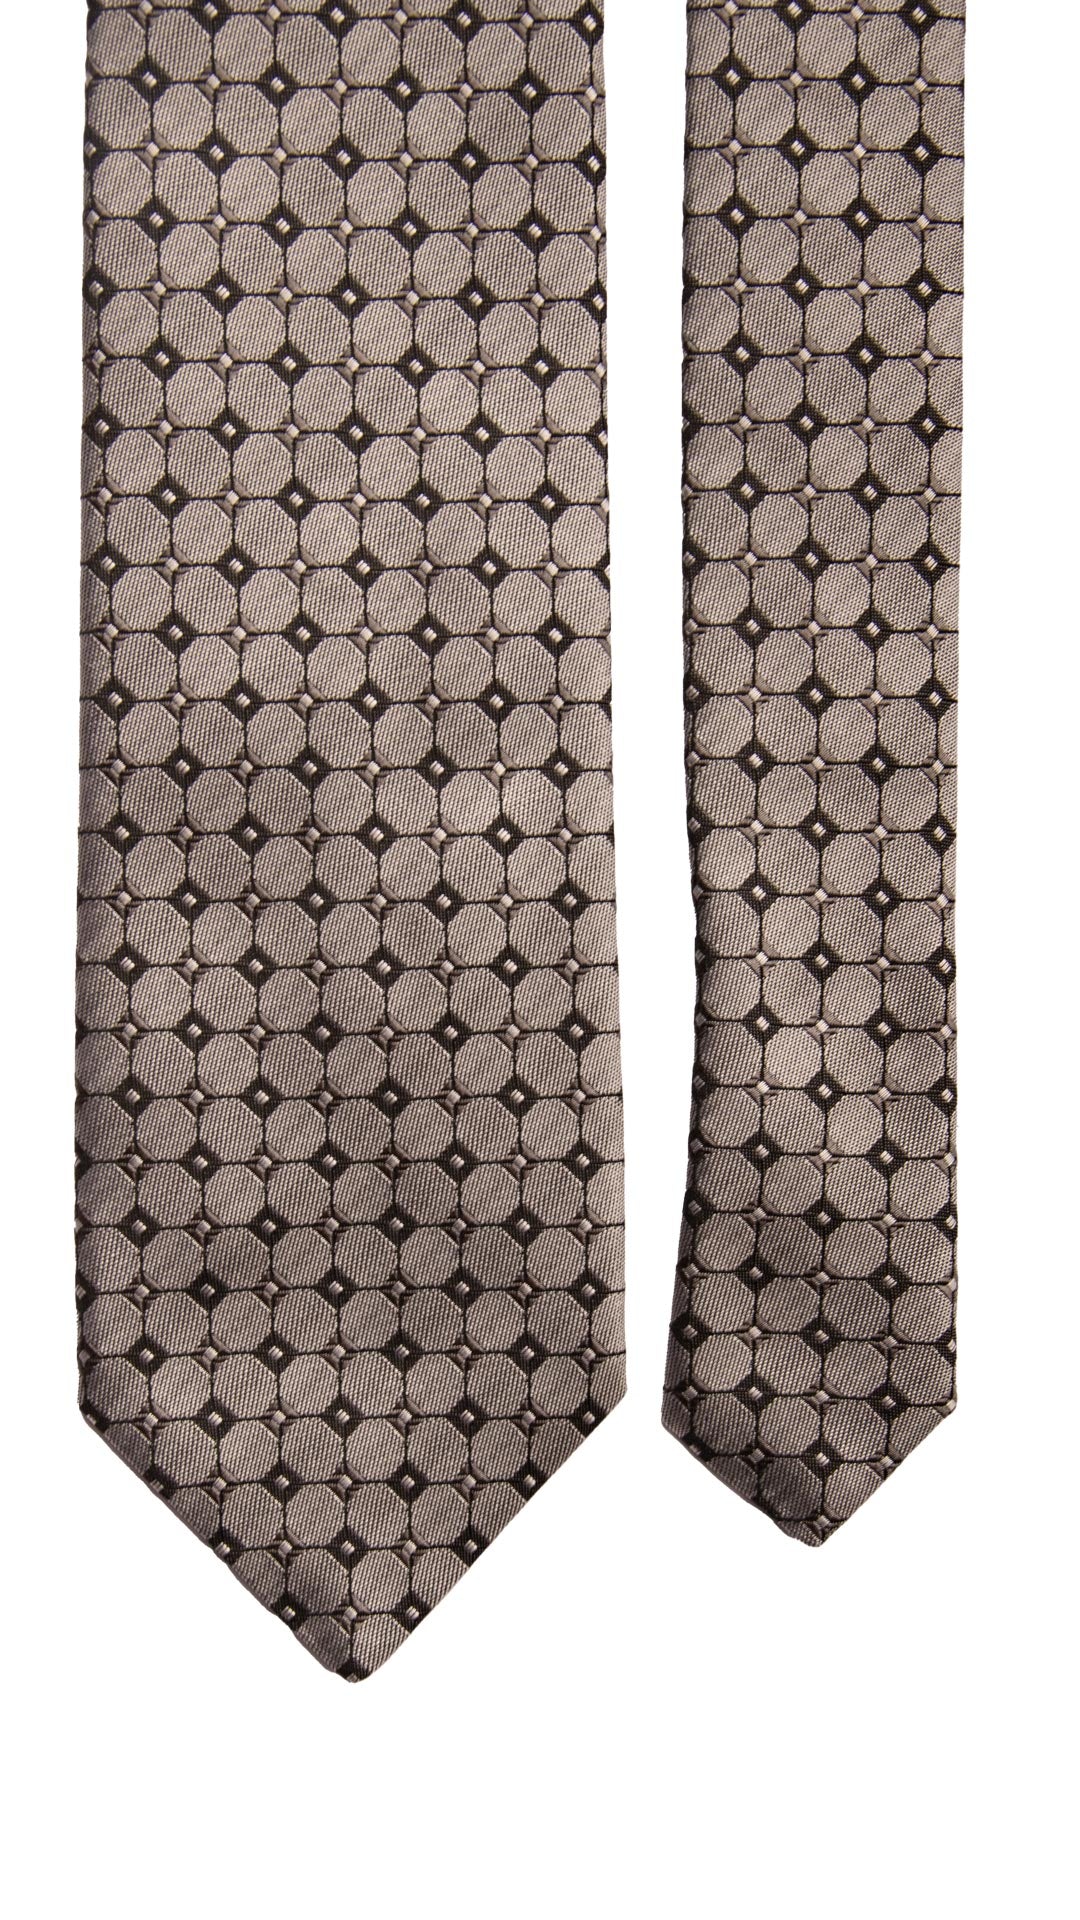 Cravatta da Cerimonia di Seta Grigio Scuro Fantasia Nera CY6675 Made in Italy Graffeo Cravatte pala